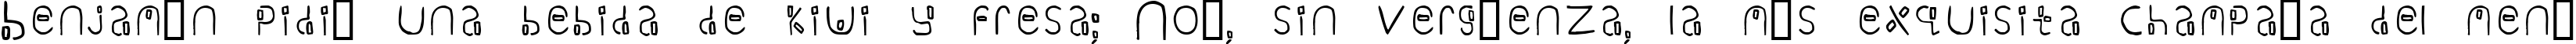 Пример написания шрифтом Yikatu текста на испанском